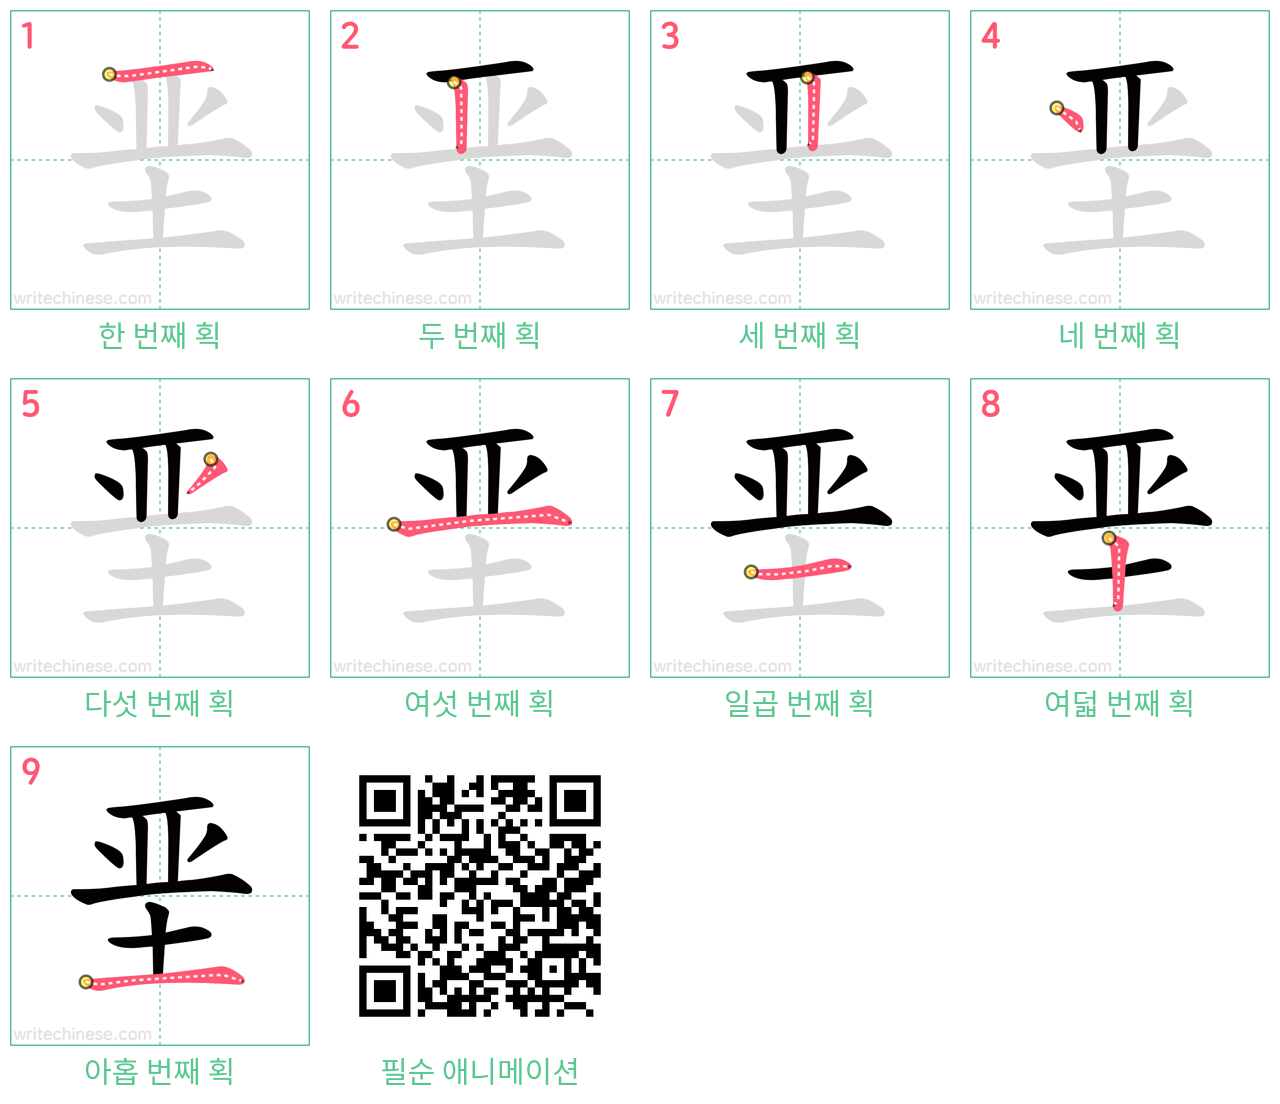 垩 step-by-step stroke order diagrams